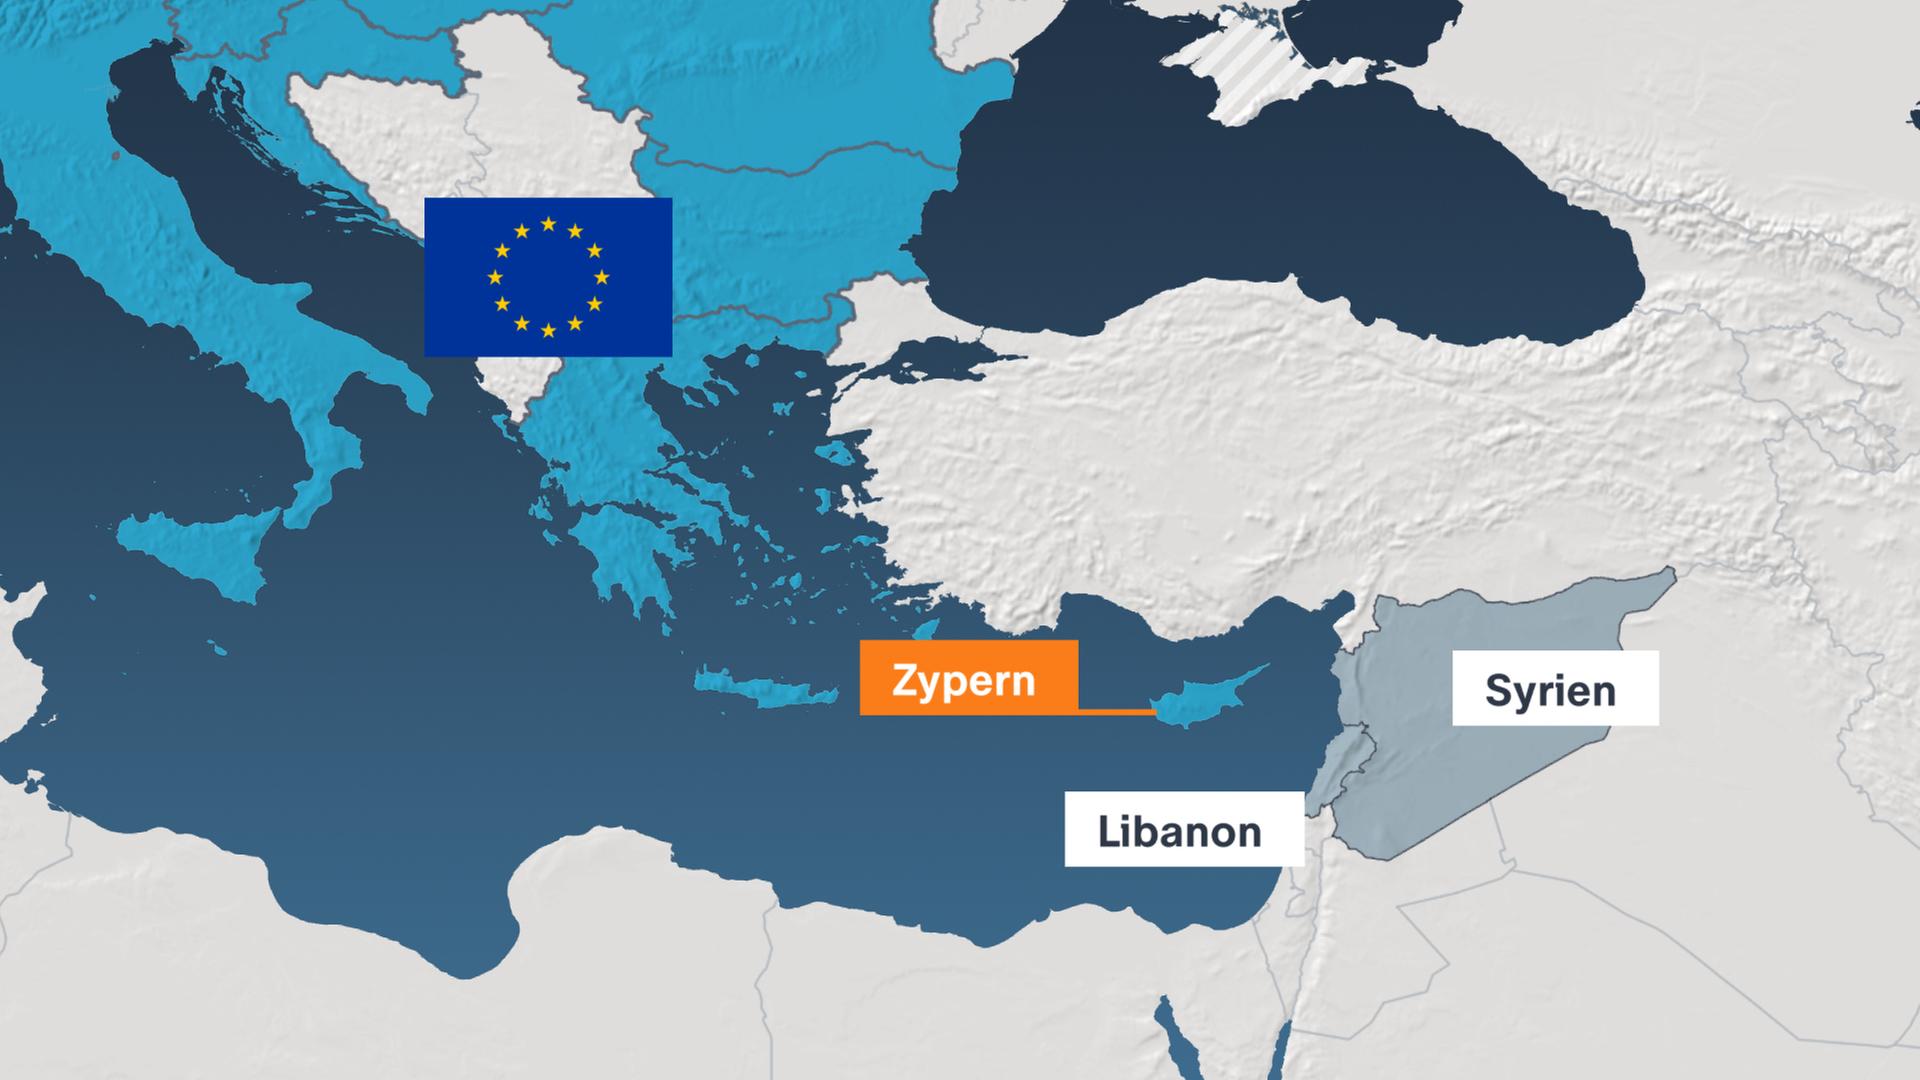 Karte Zypern, Libanon, Syrien